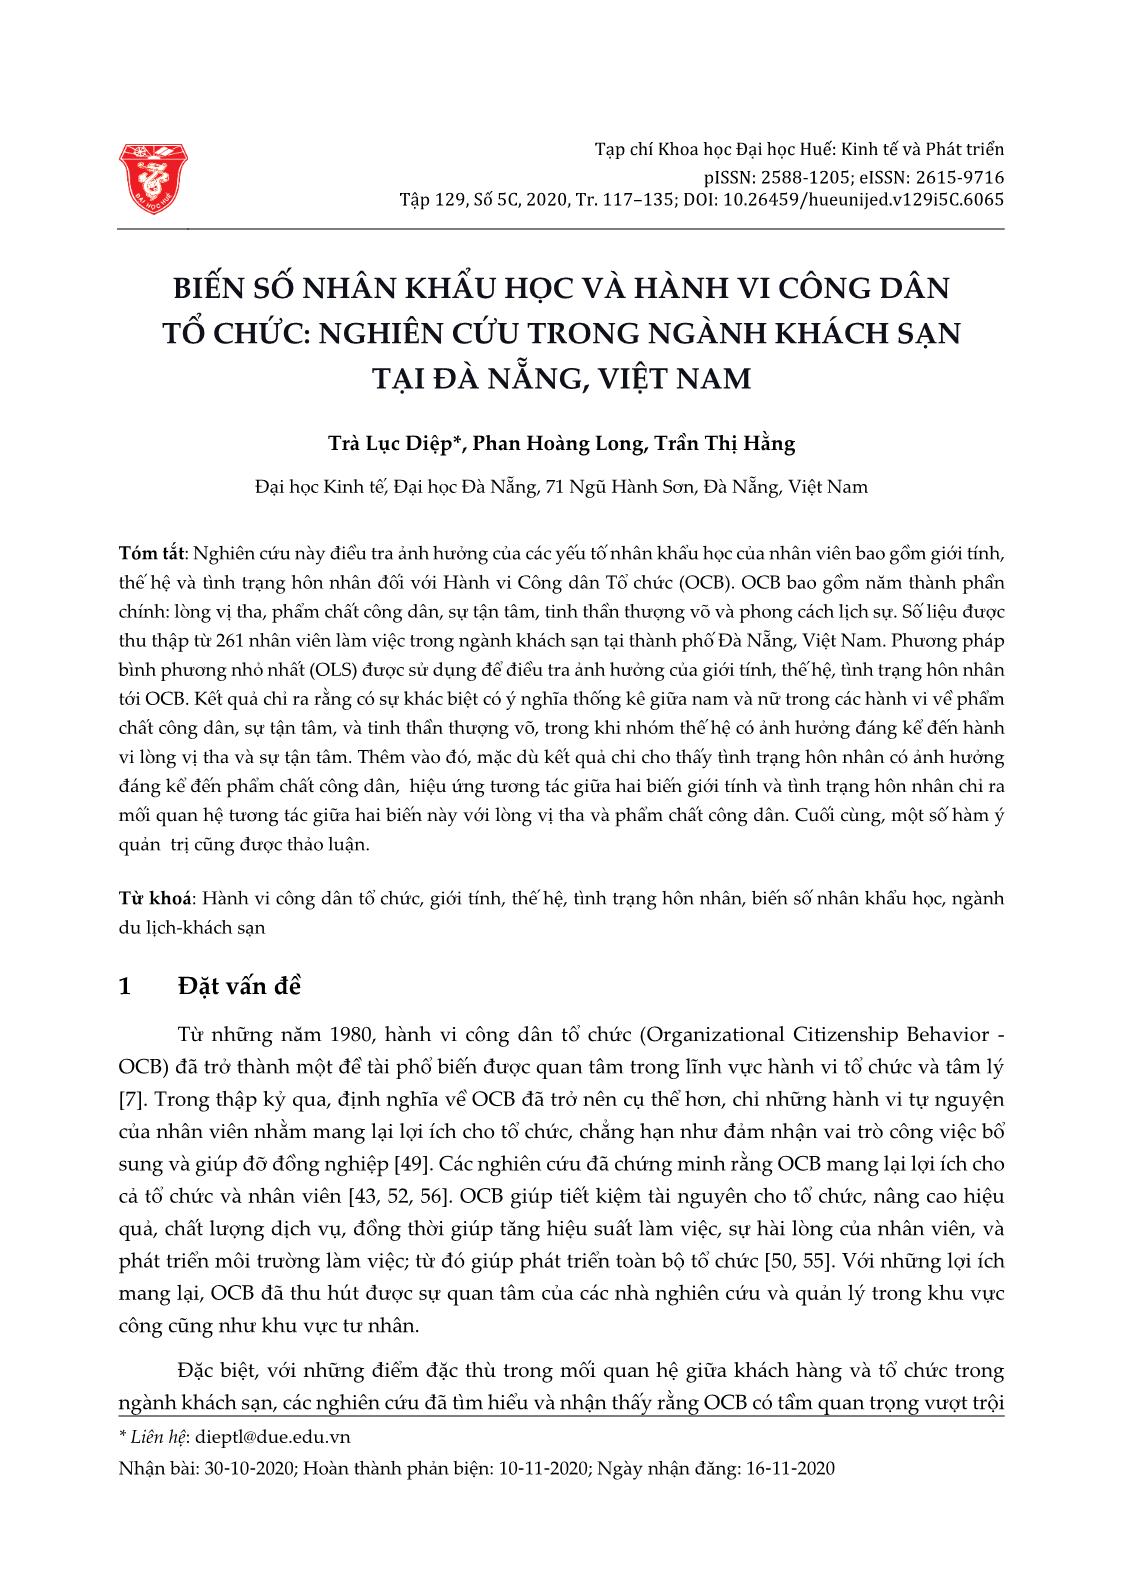 Biến số nhân khẩu học và hành vi công dân tổ chức: Nghiên cứu trong ngành Khách sạn tại Đà Nẵng, Việt Nam trang 1